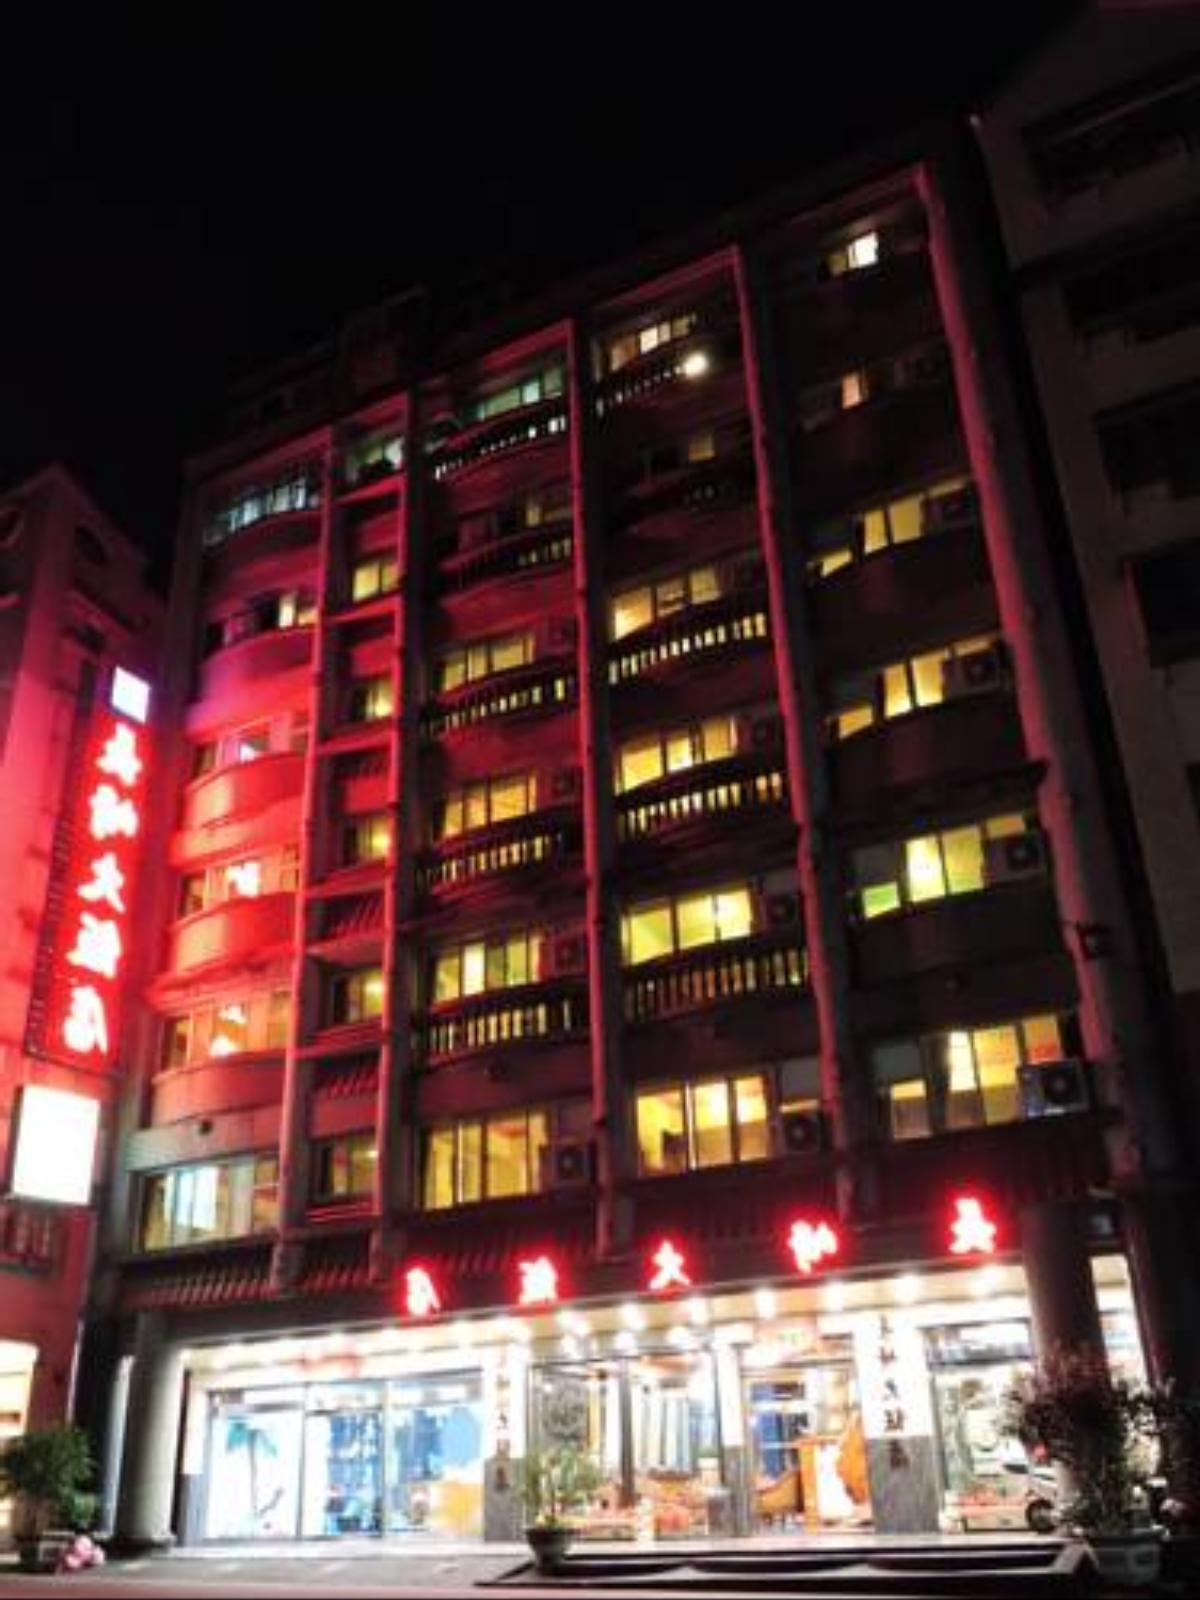 Longchi Hot Spring Hotel Hotel Jiaoxi Taiwan Overview